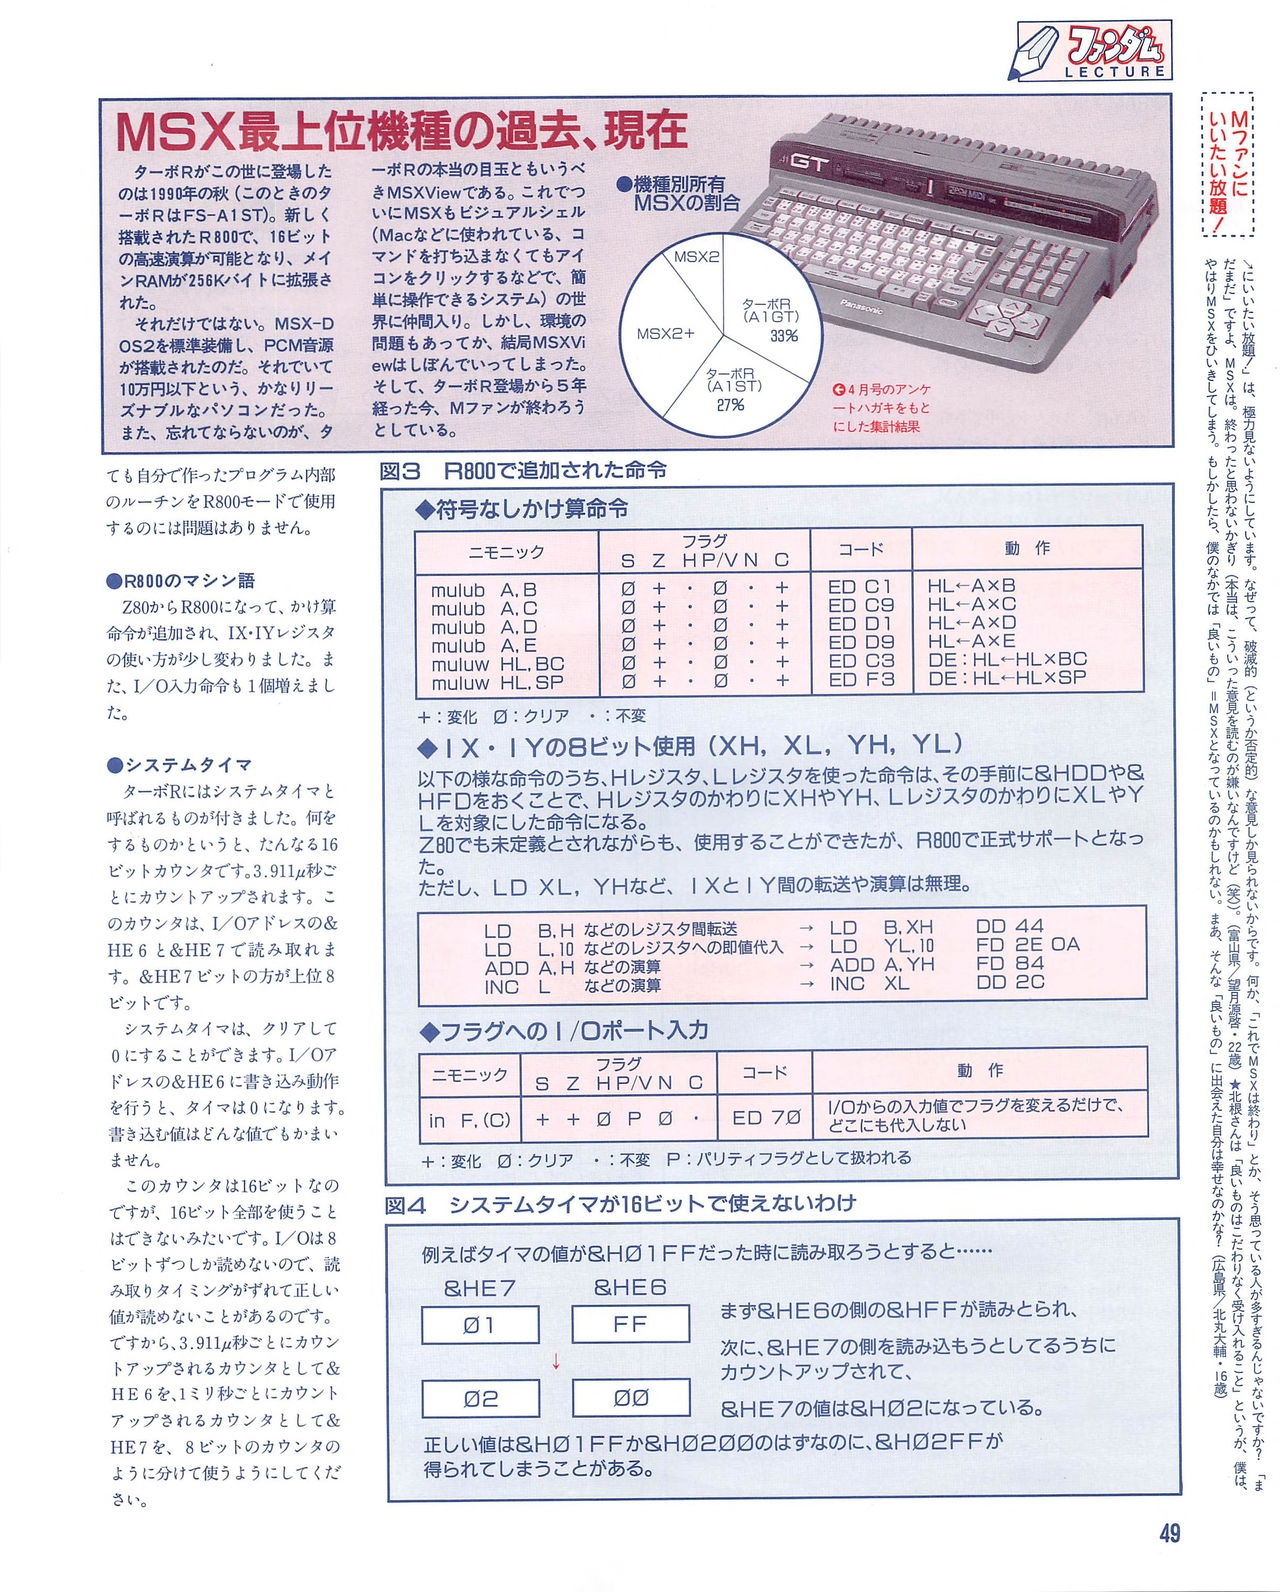 MSX Fan 1995-06 48